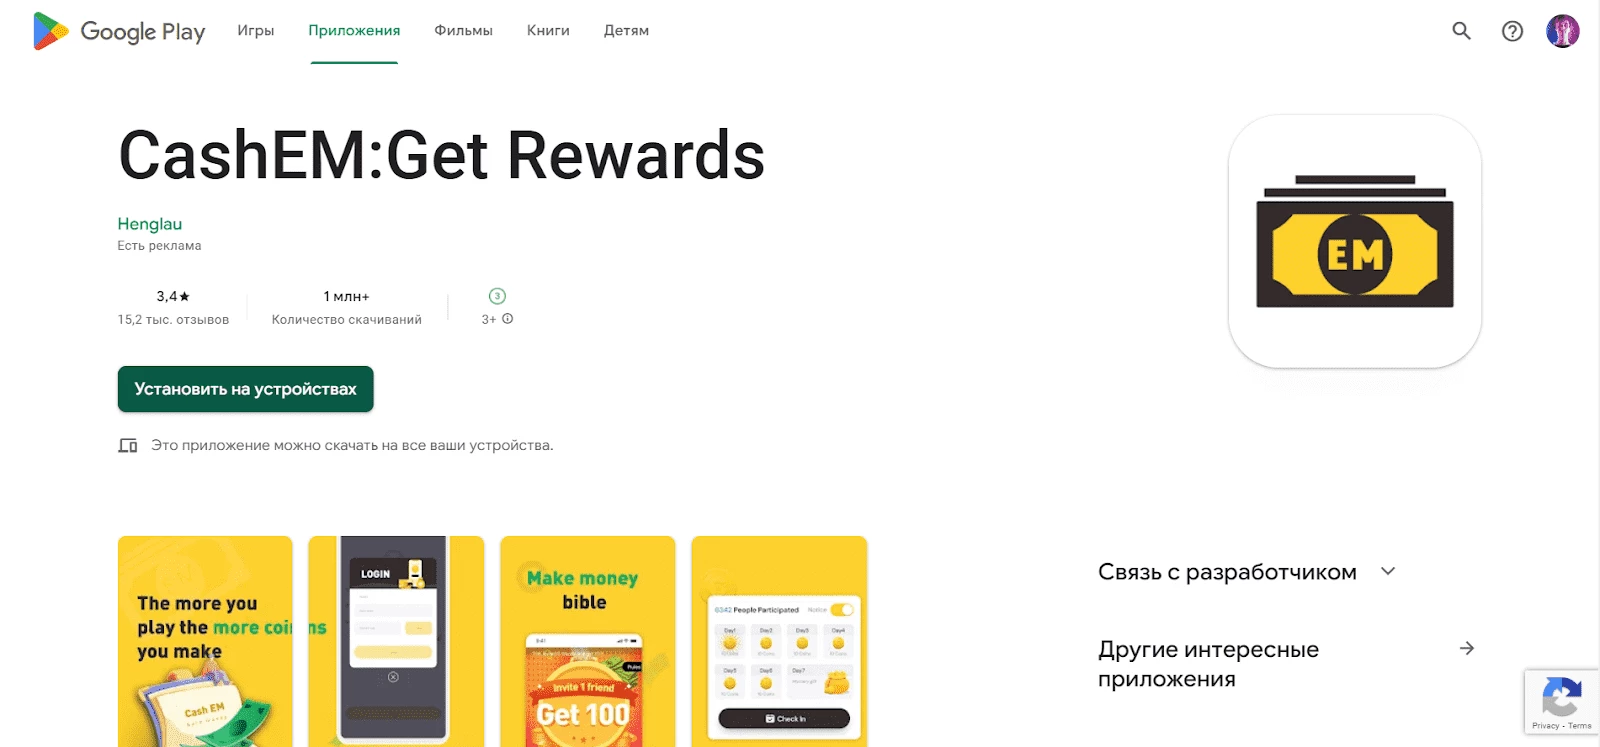 CashEM:Get Rewards - сервис для заработка с помощью телефона